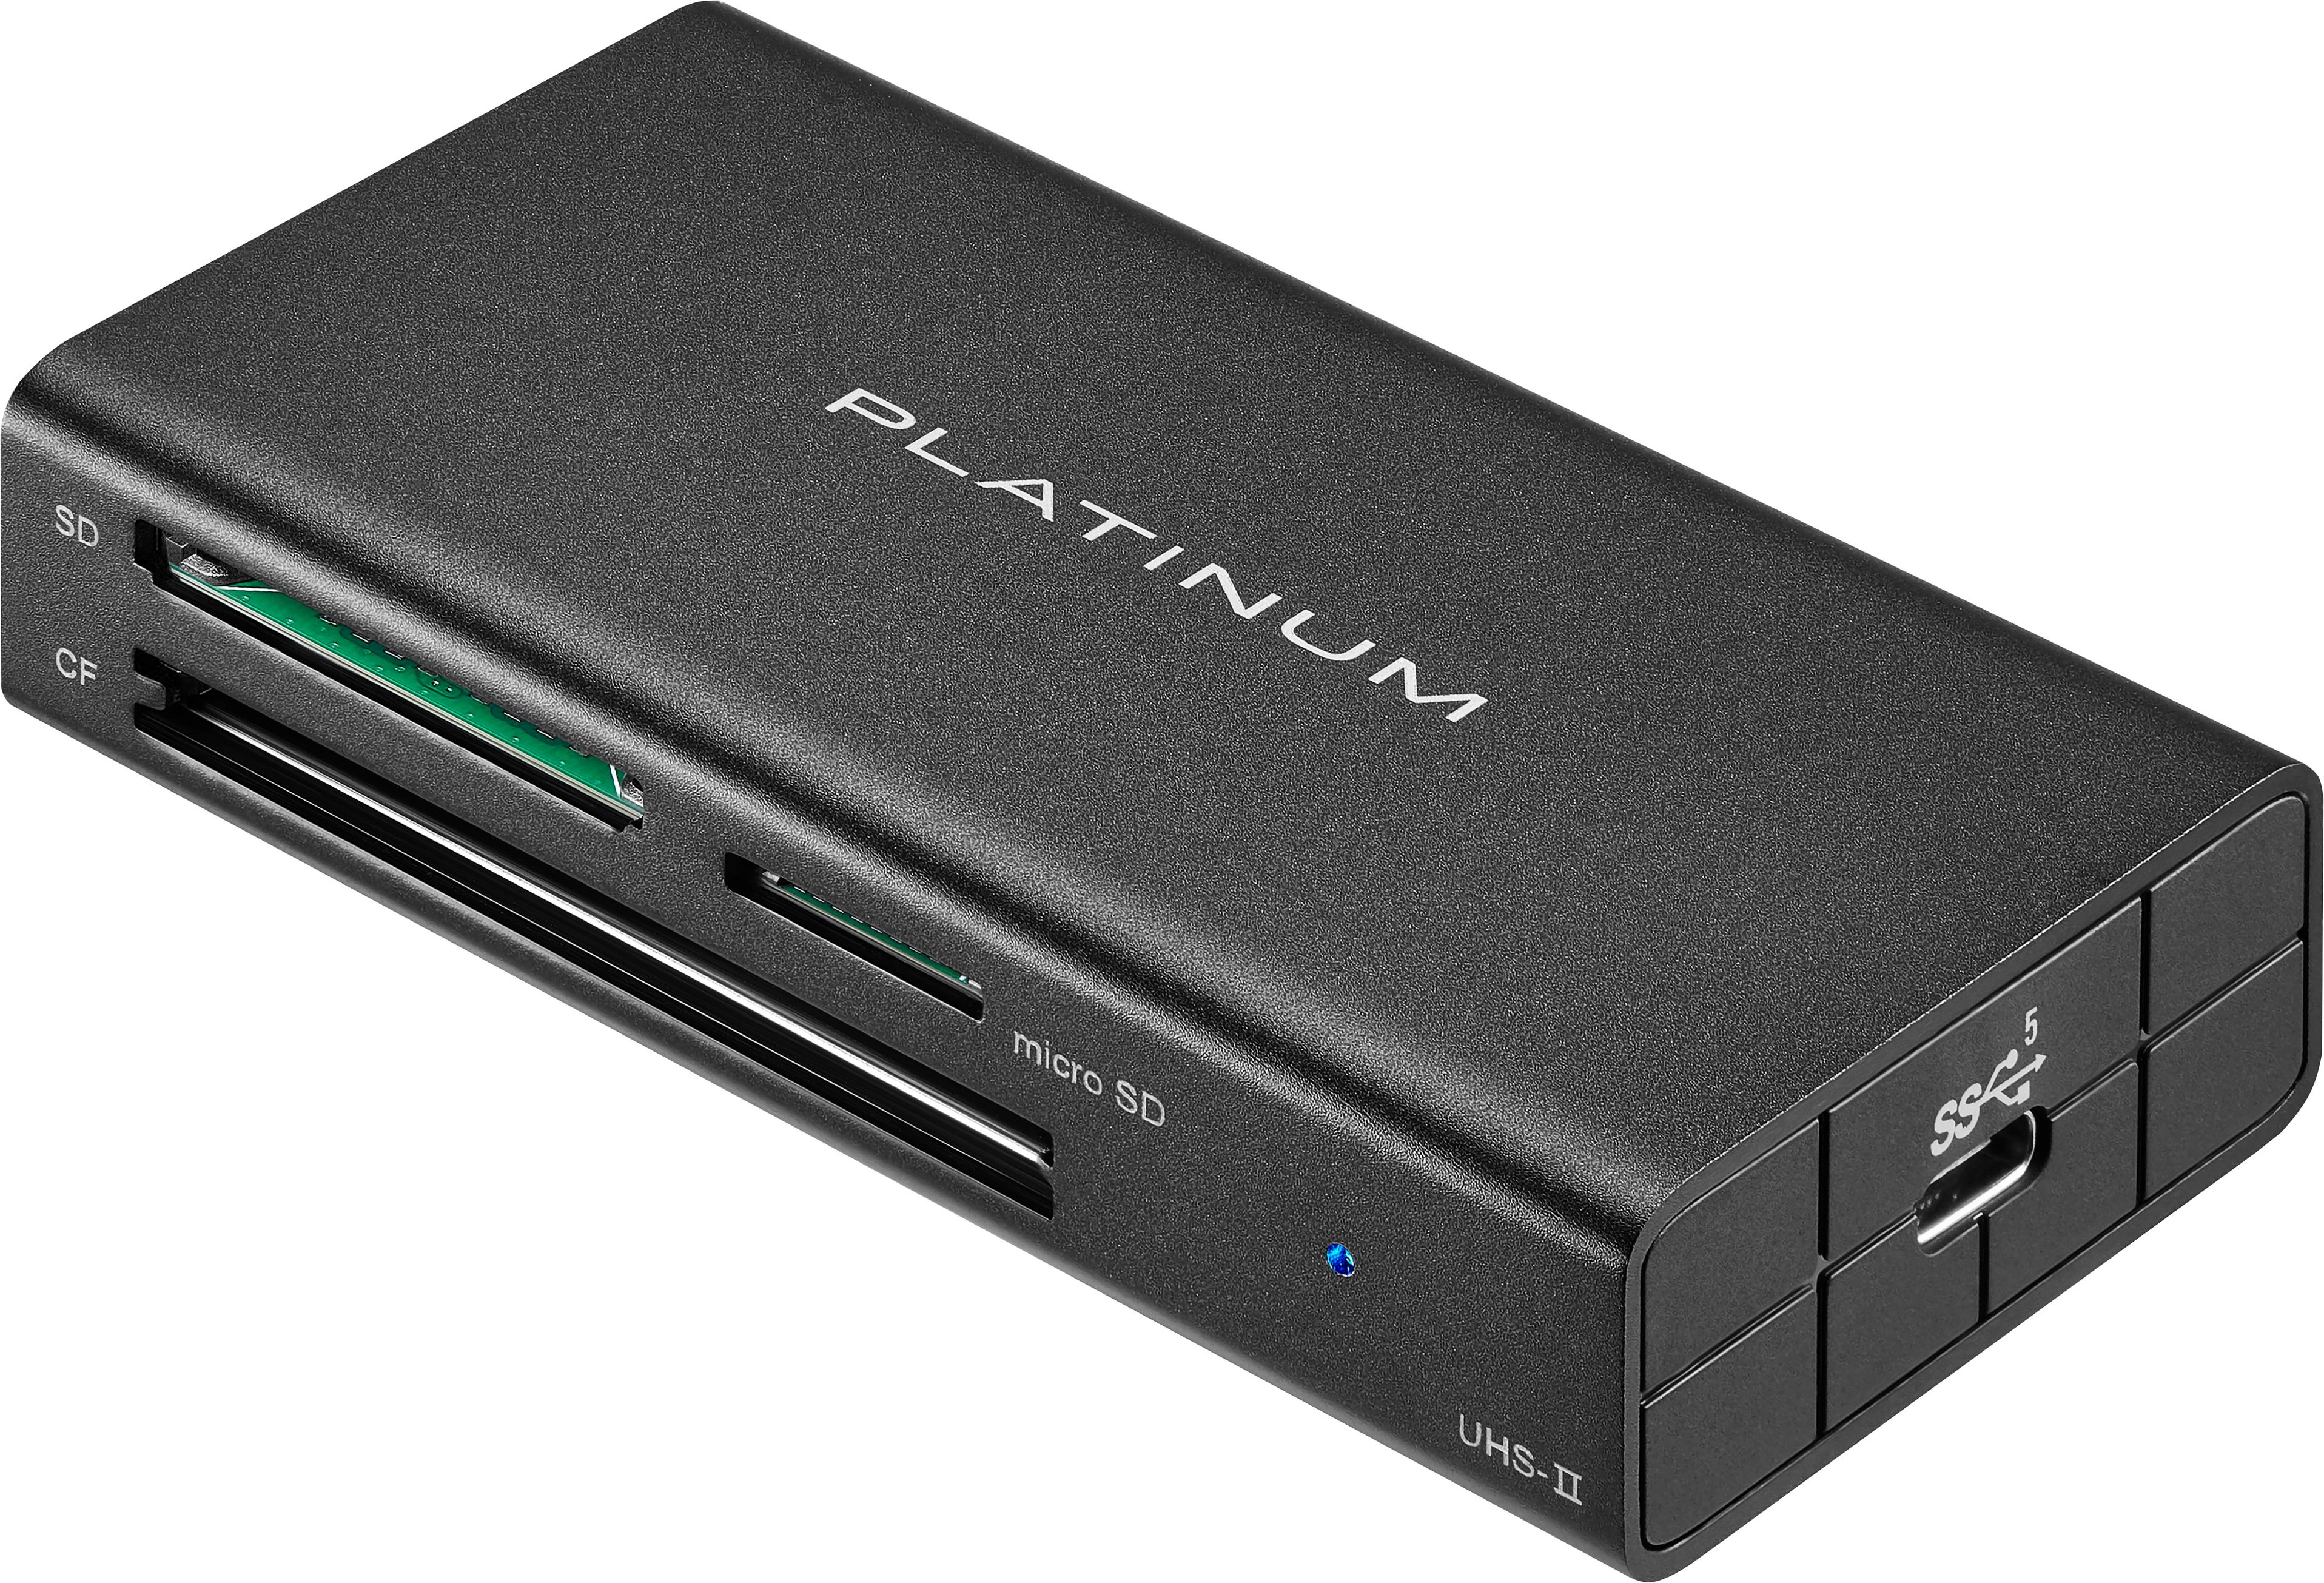 redden Wijden Zwijgend Platinum™ USB 3.2 Gen 1 SD, microSD, CF 3 Slot Memory Card Reader Black  PT-CRDAC1 - Best Buy